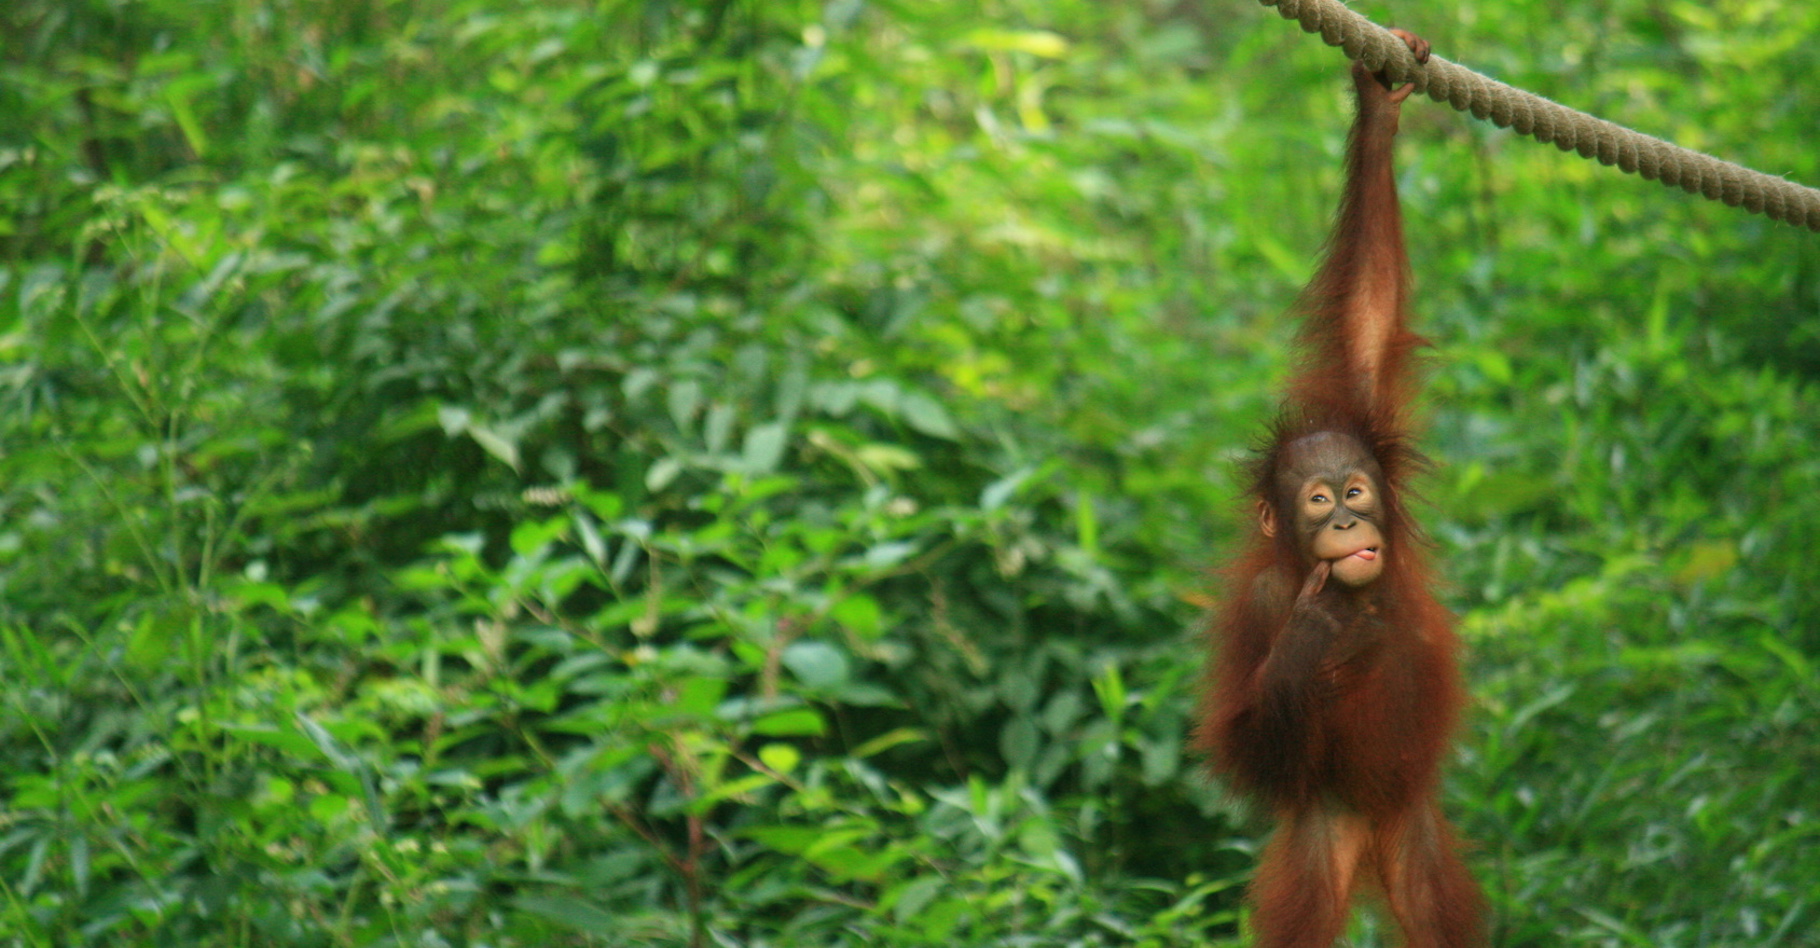 Alors que de nouveaux travaux éclairent leur intelligence, les orangs-outans continuent d’être menacés par la déforestation. © darock, Fotolia